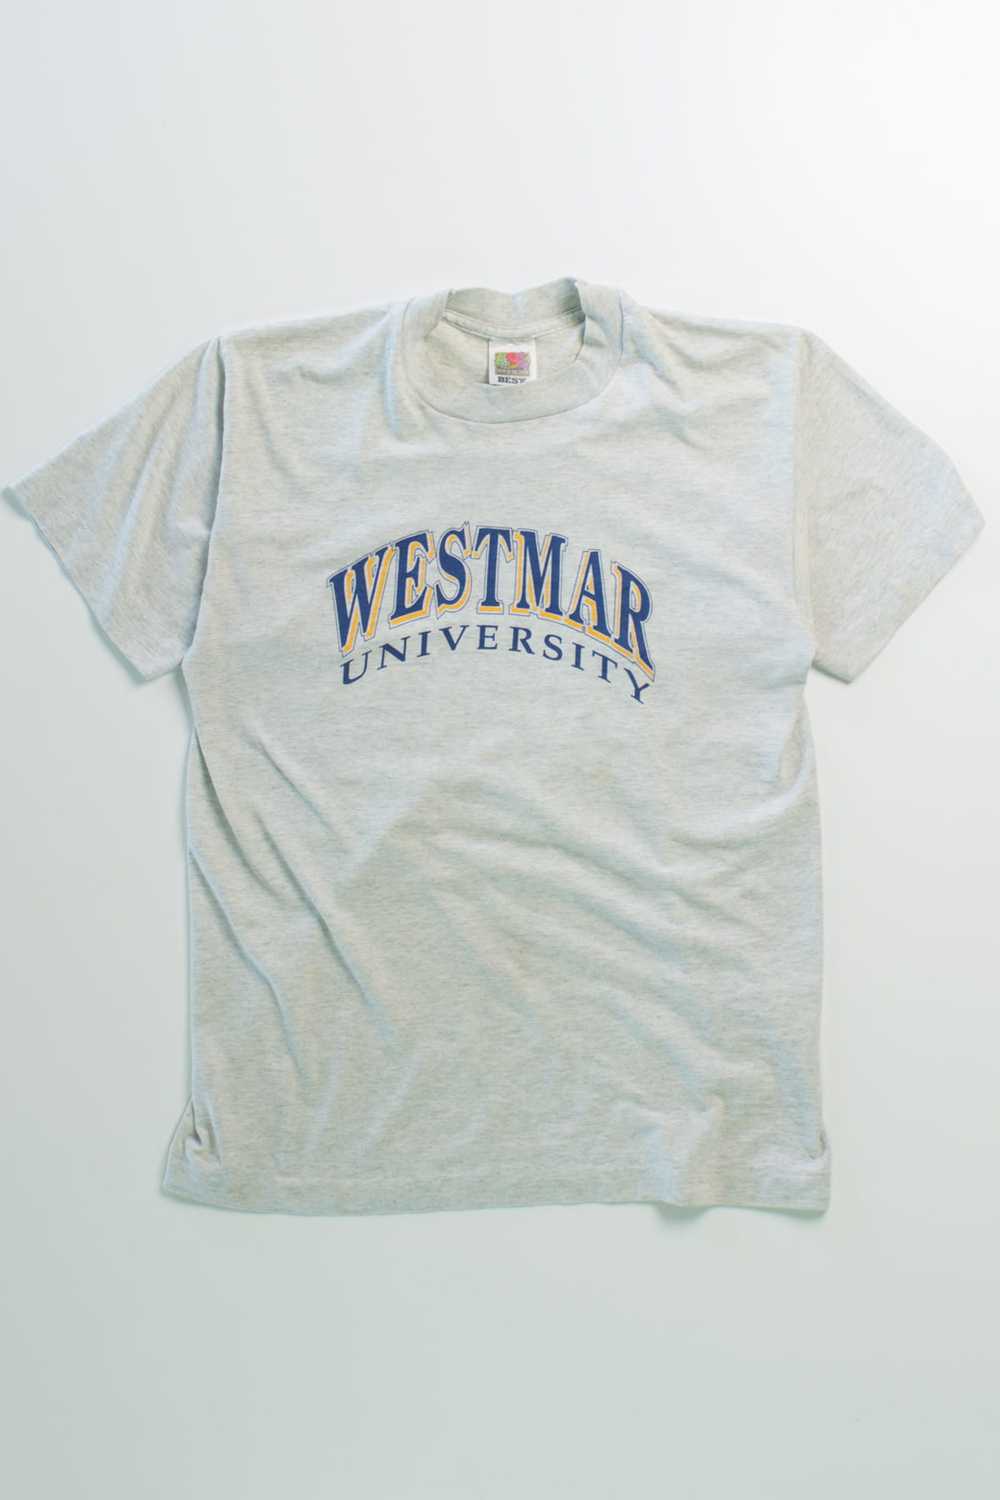 Vintage Westmar University Single Stitch T-Shirt - image 2